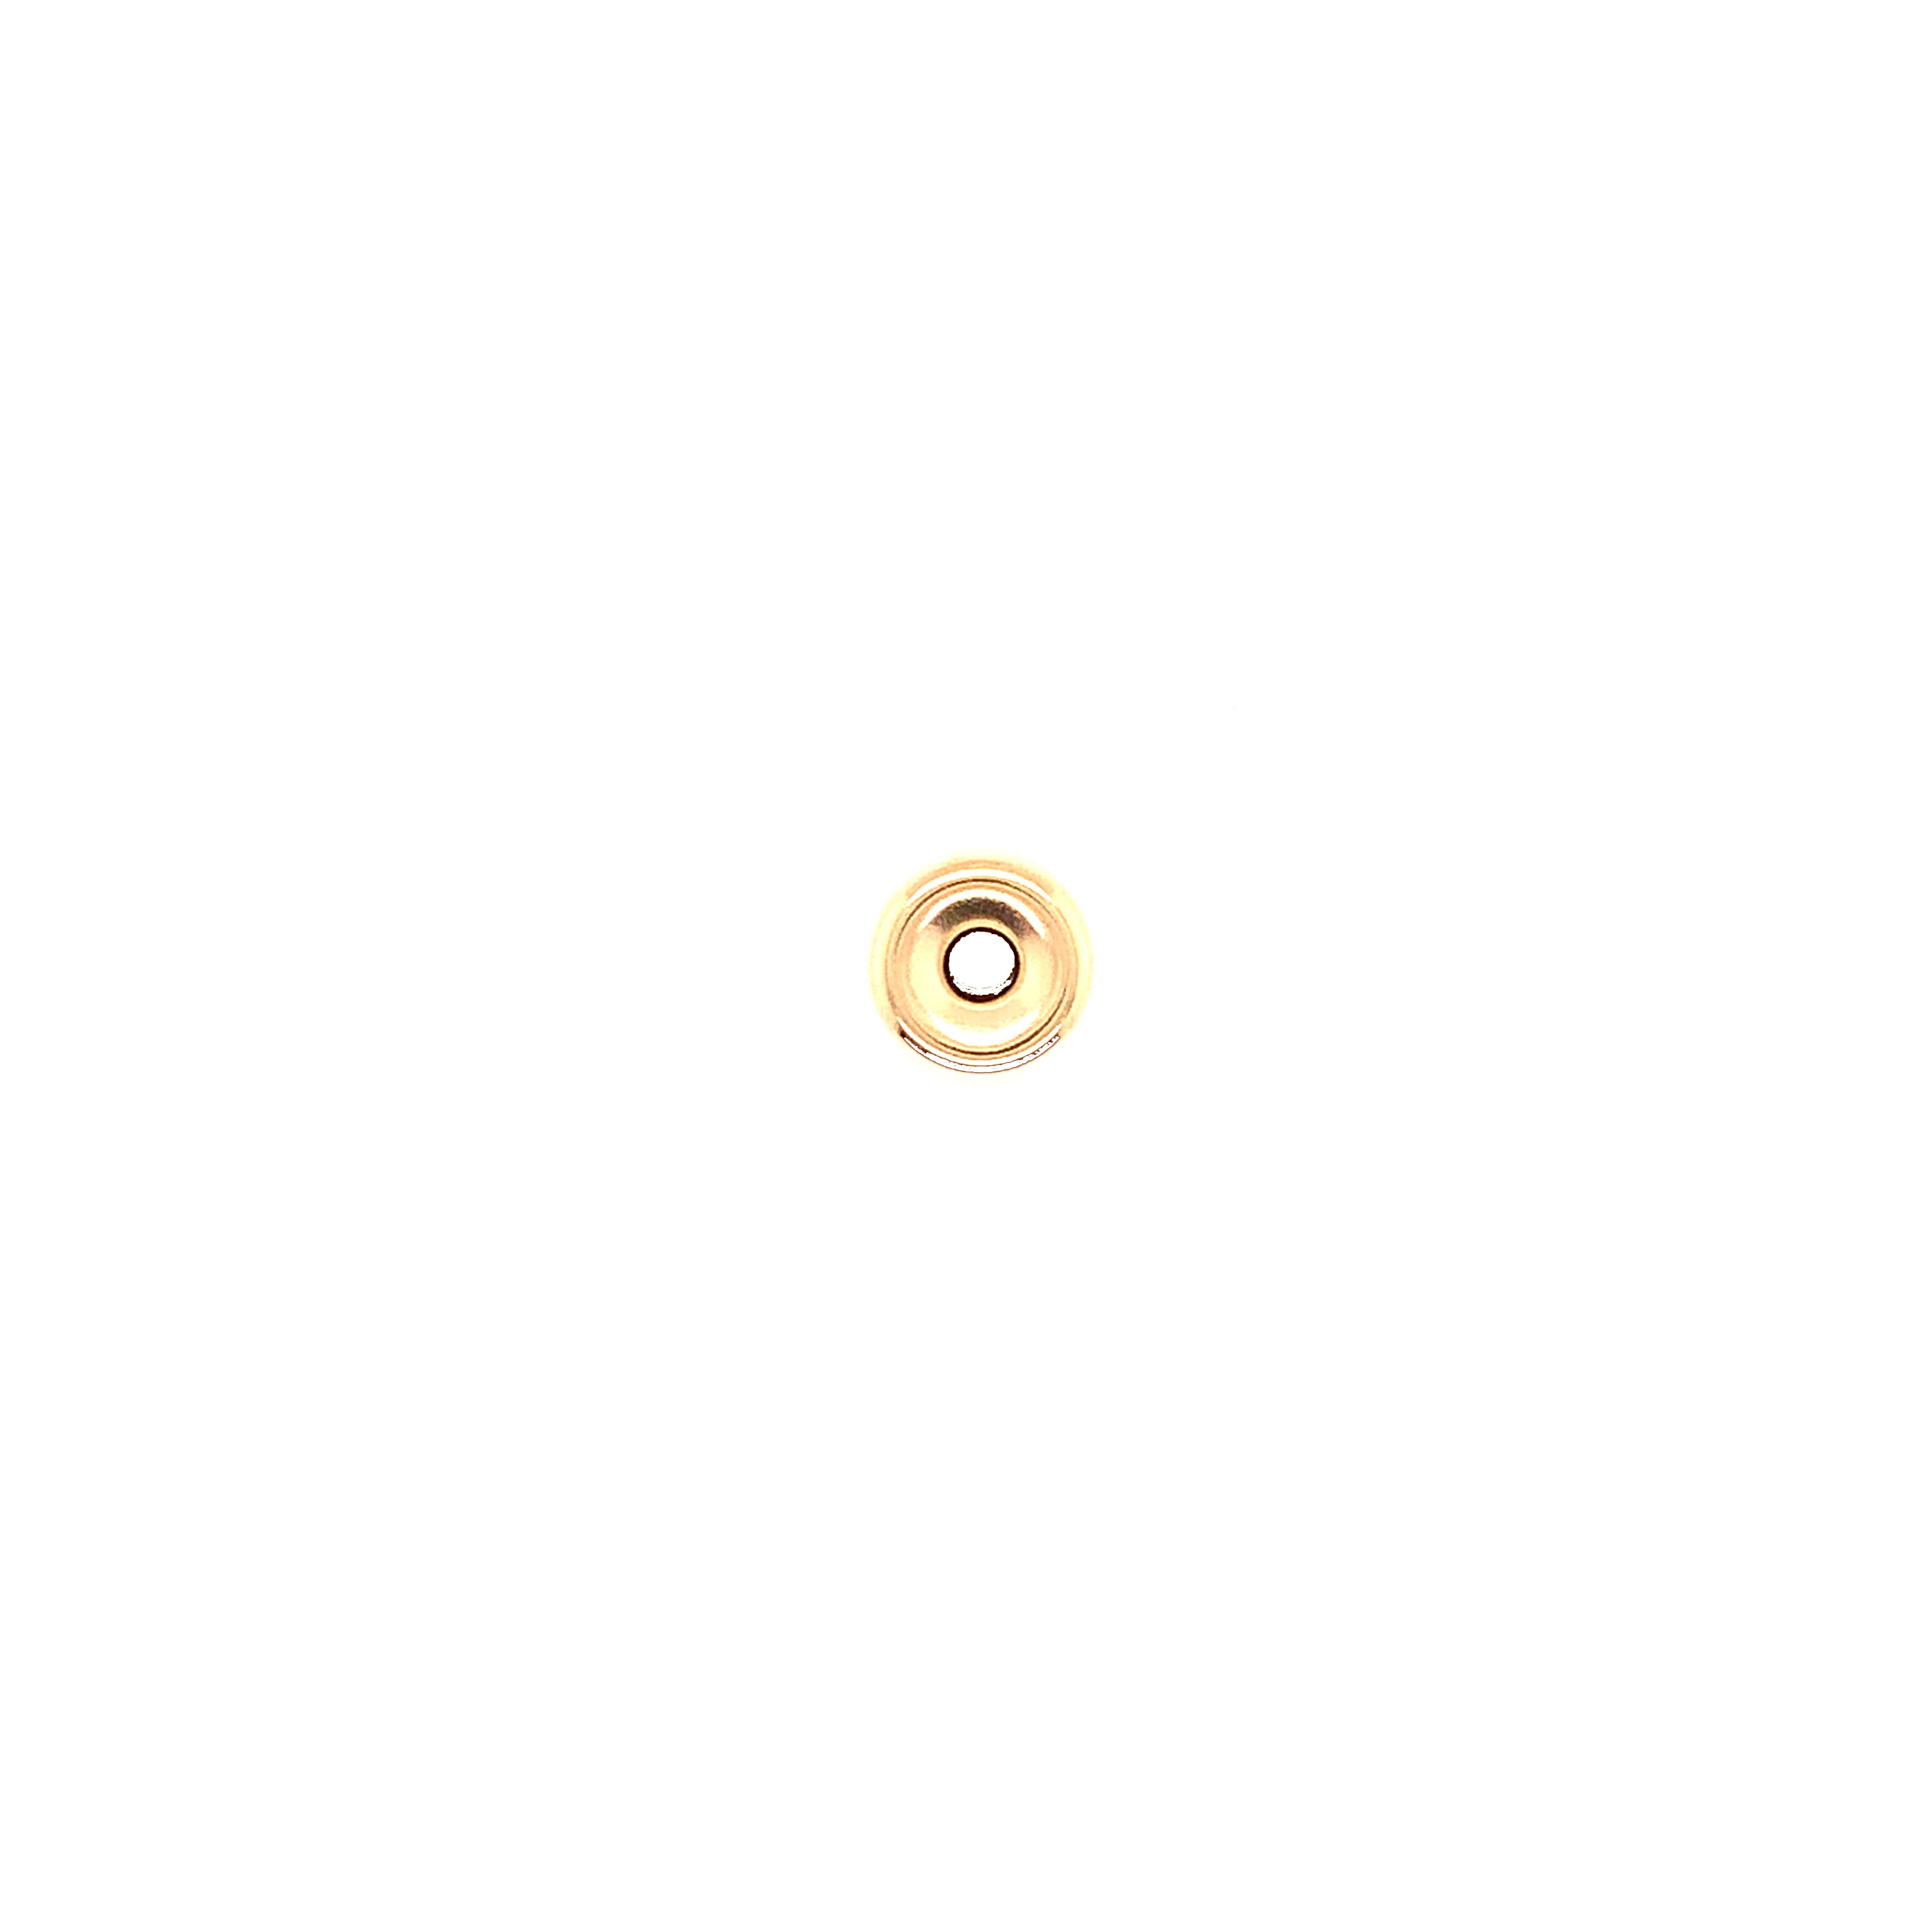 8mm Rondelle - Gold Filled